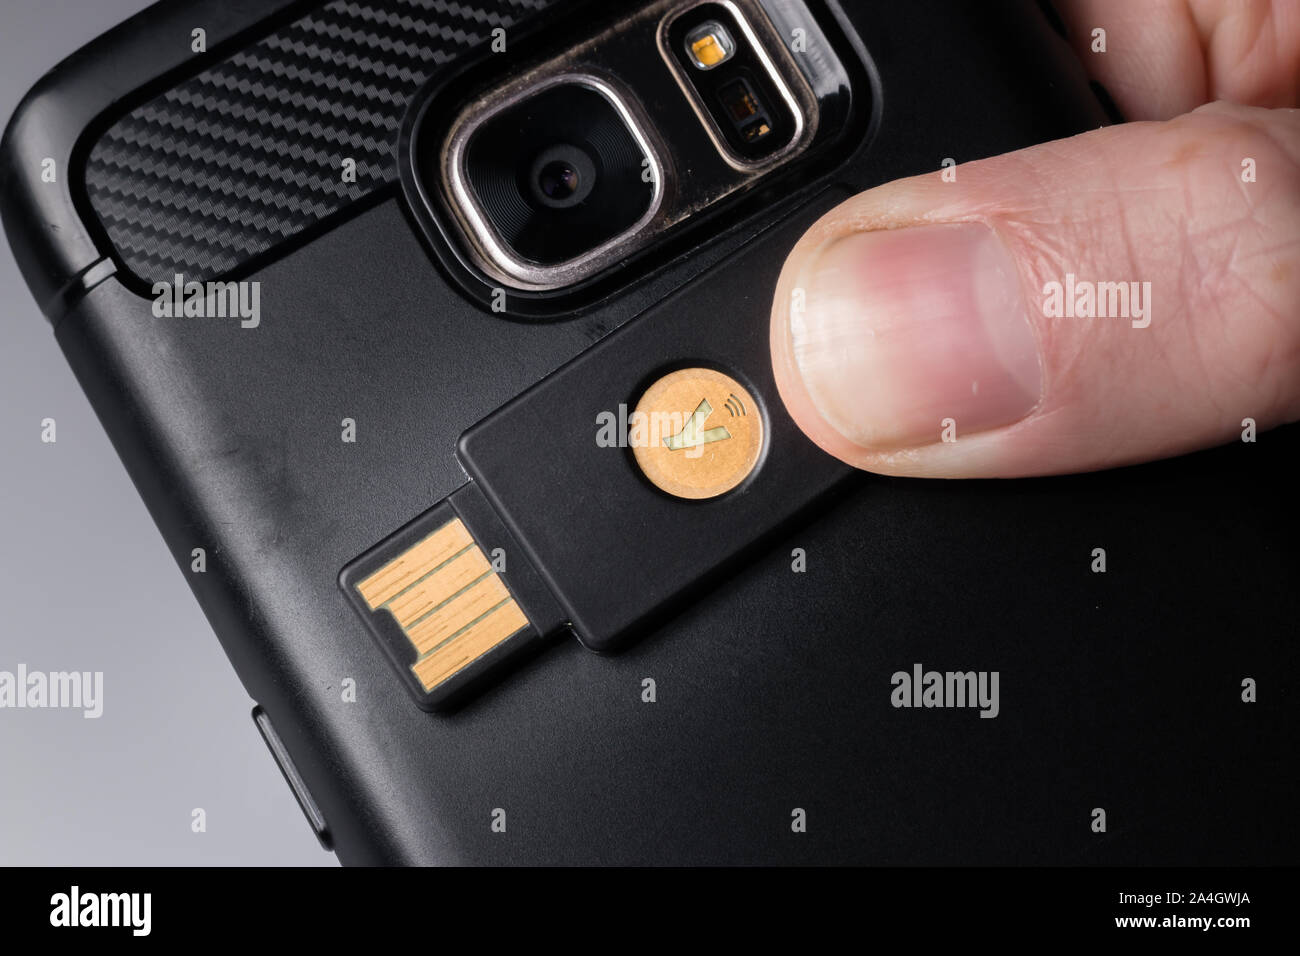 Une Yubikey 5 clé de sécurité à l'aide de NFC pour se connecter à un smartphone Banque D'Images